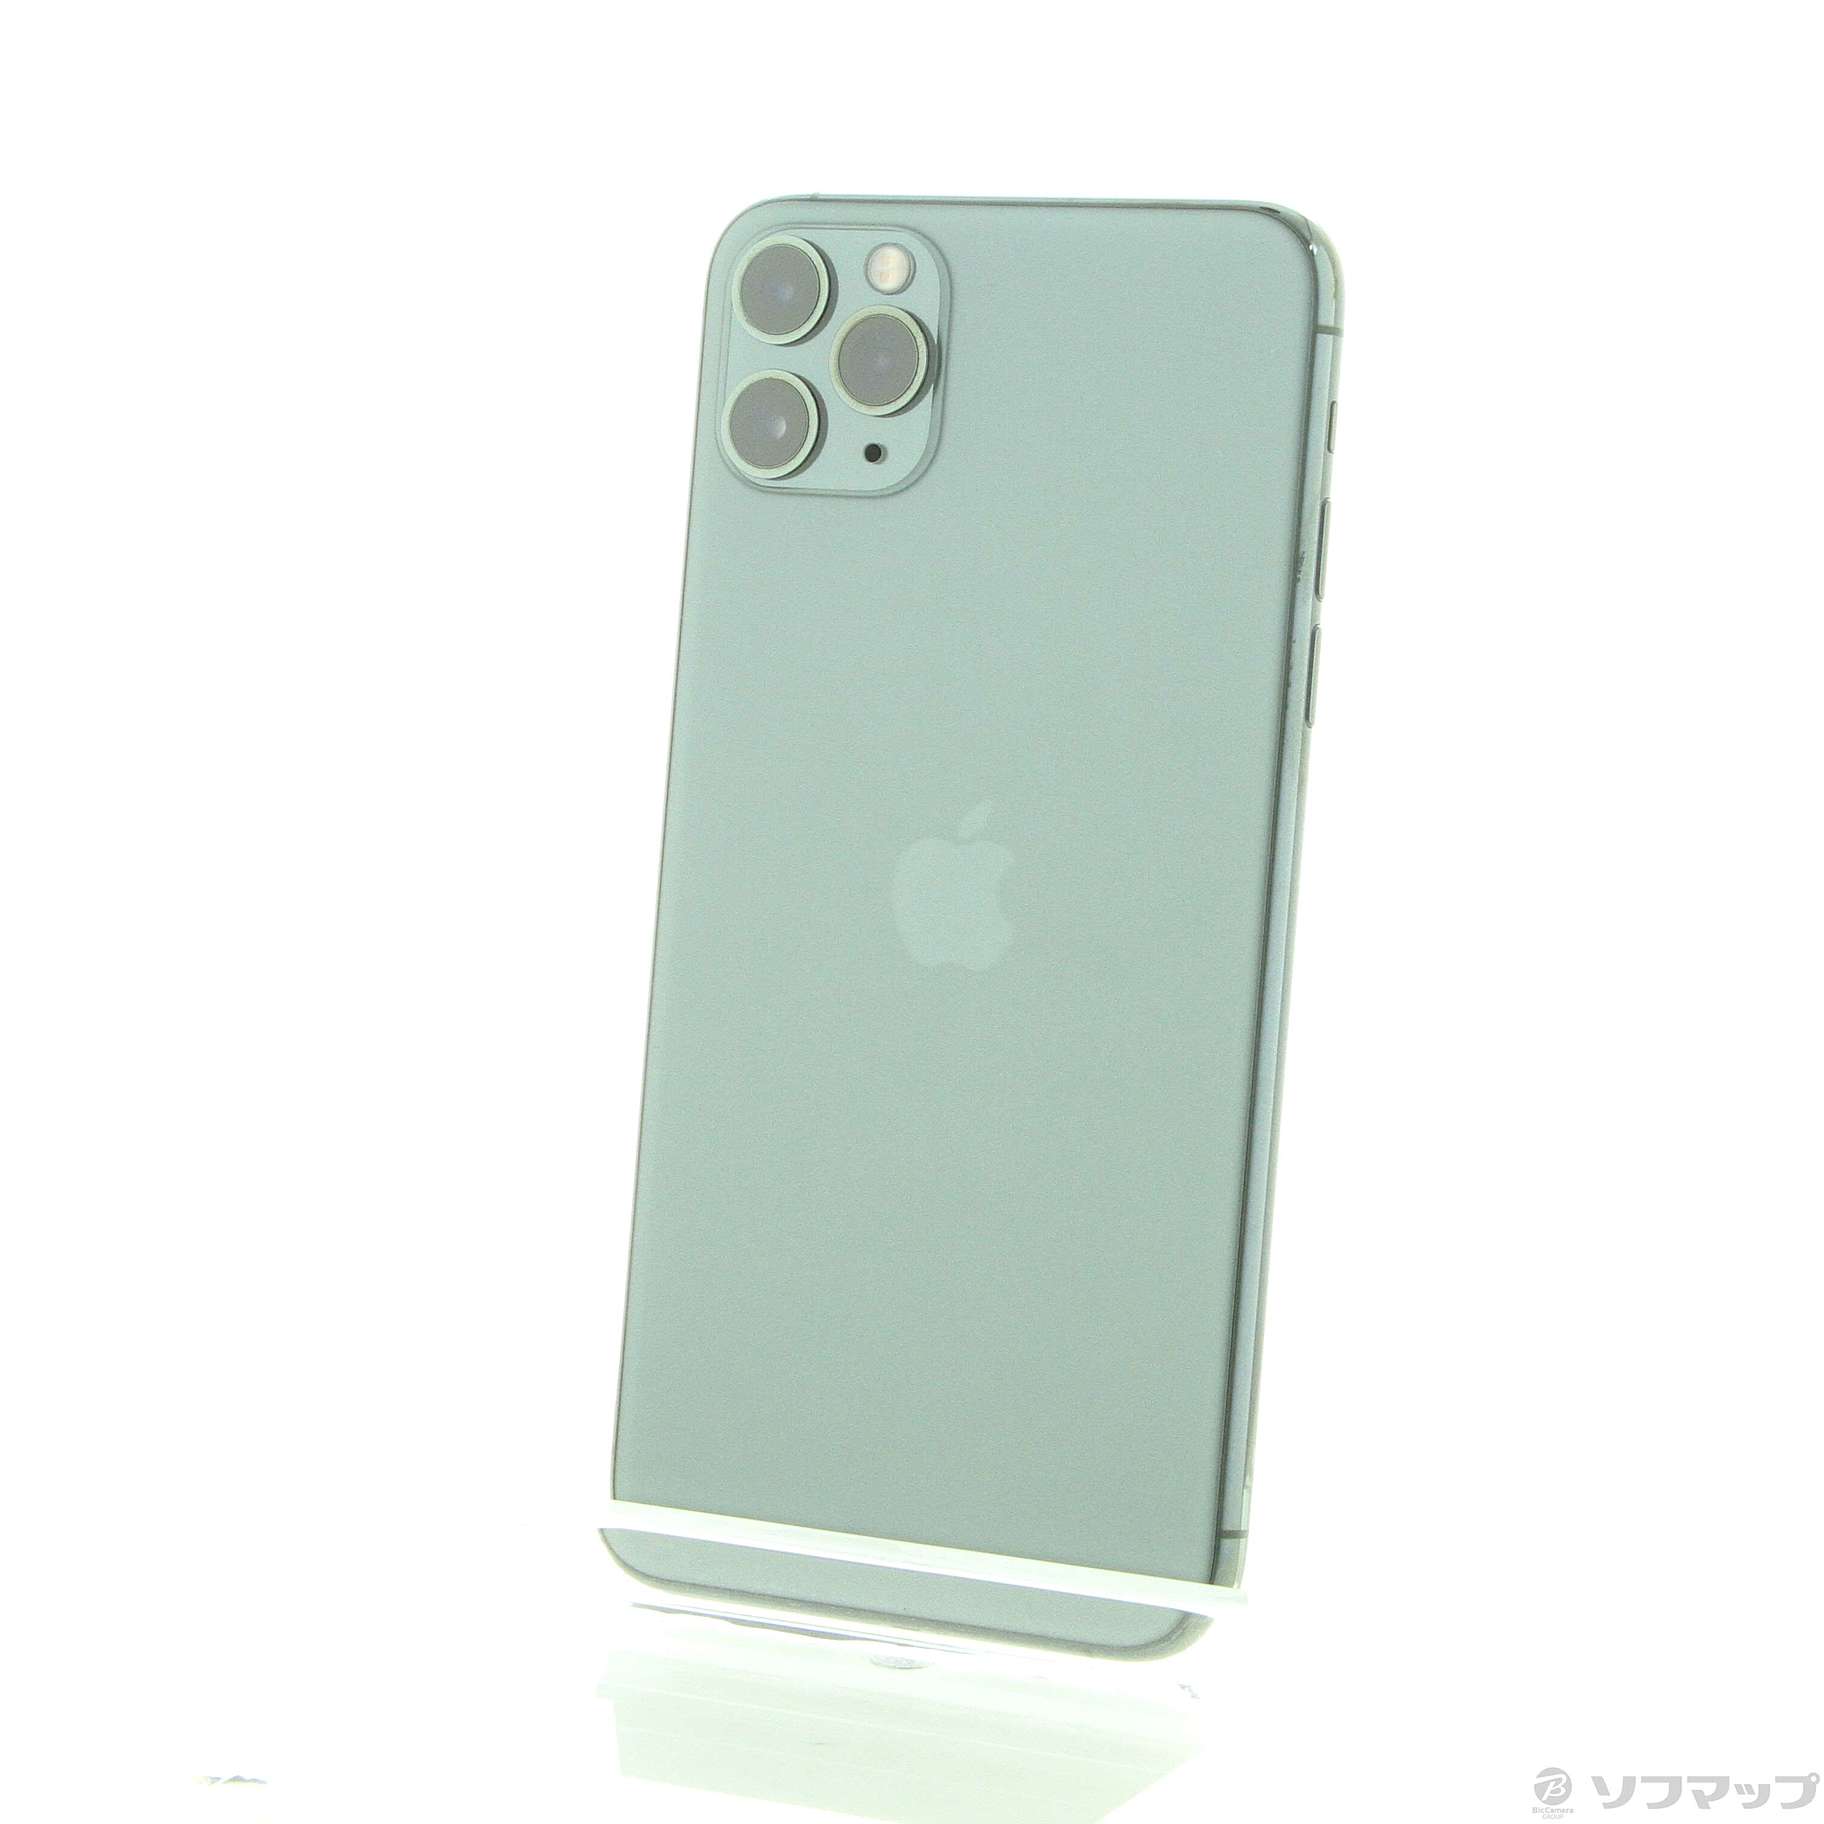 【早い者勝ち】 iPhone11 ProMax 256GB ミッドナイトグリーン